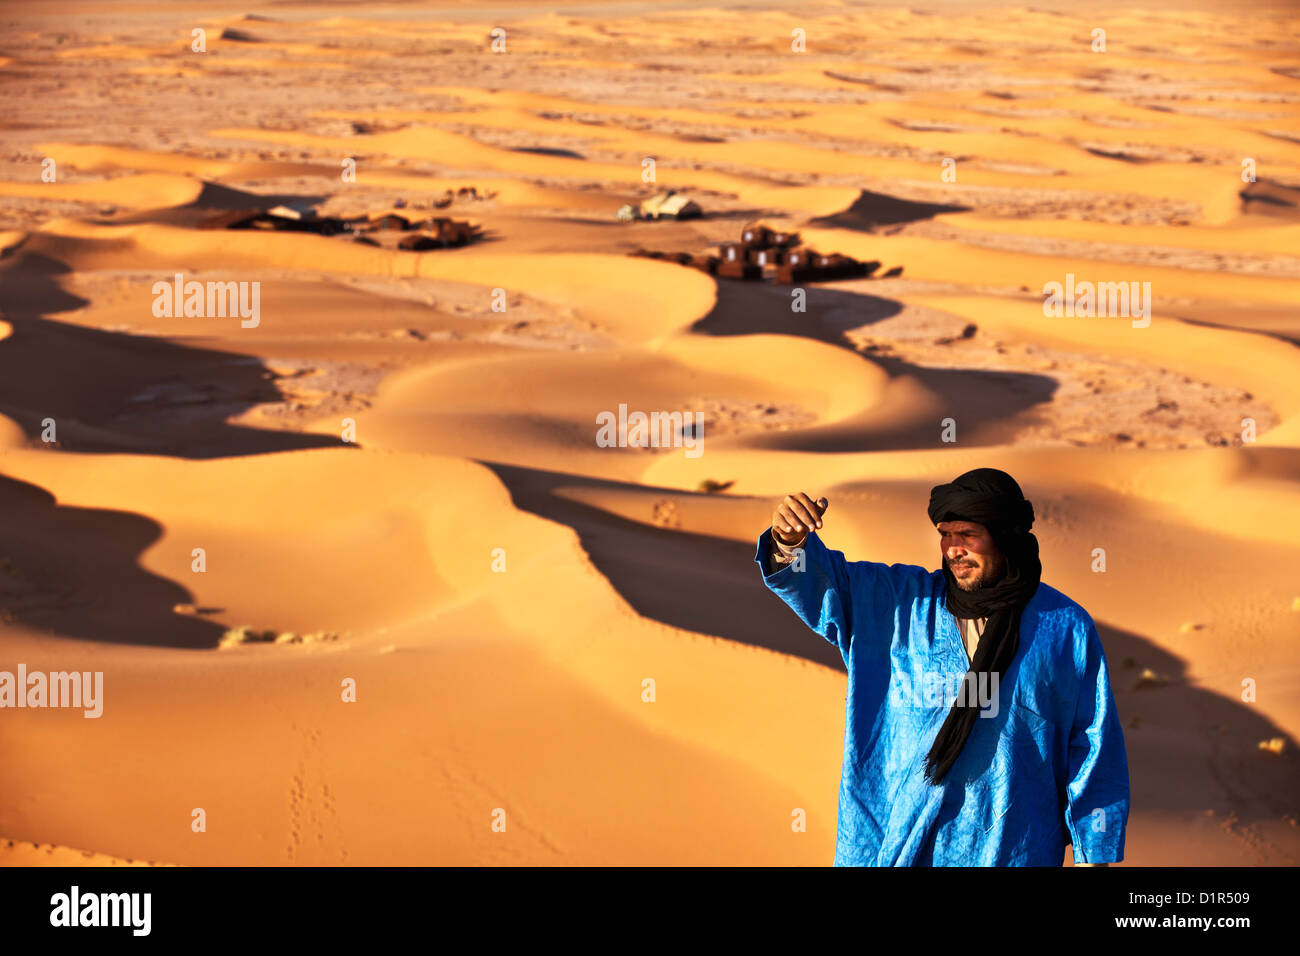 Marokko, M' Hamid, Erg Chigaga Dünen. Wüste Sahara. Lokalen Berber Mann auf Sanddüne, Hintergrund Touristenlager, Biwak. Stockfoto